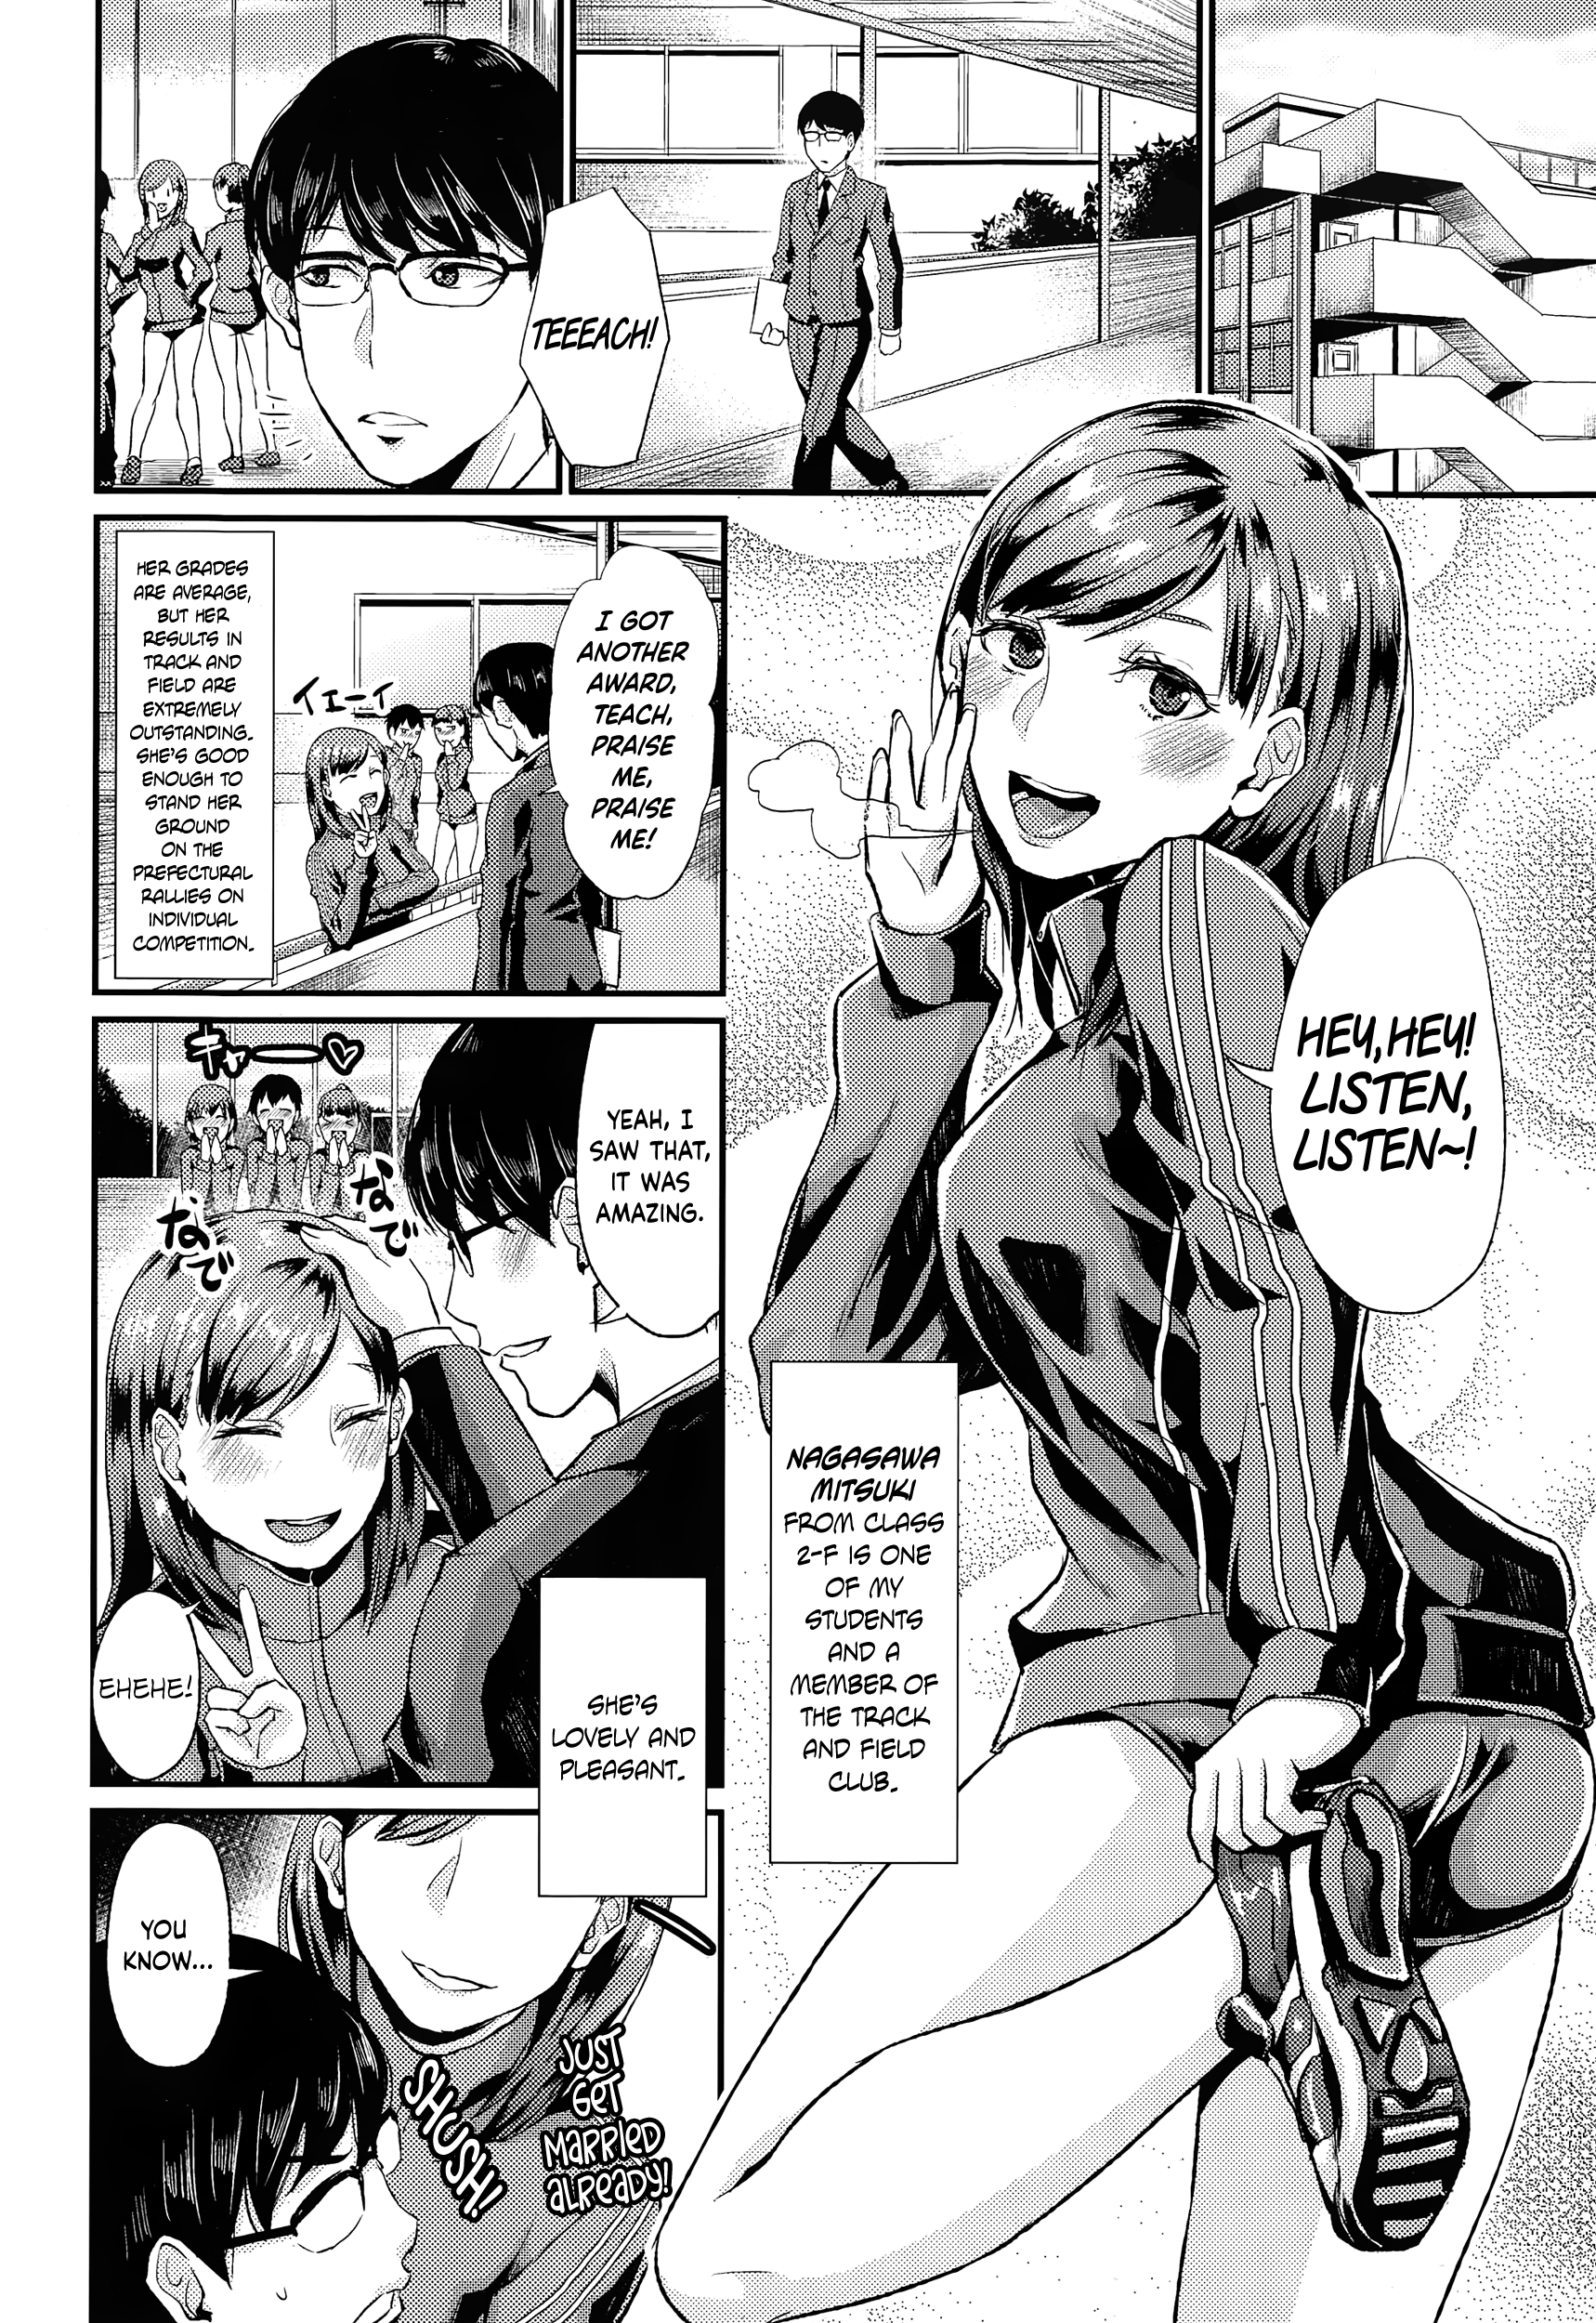 Shota manga by Shinooka Homare - Rifure Yattete Nani ga Warui - Vol 3